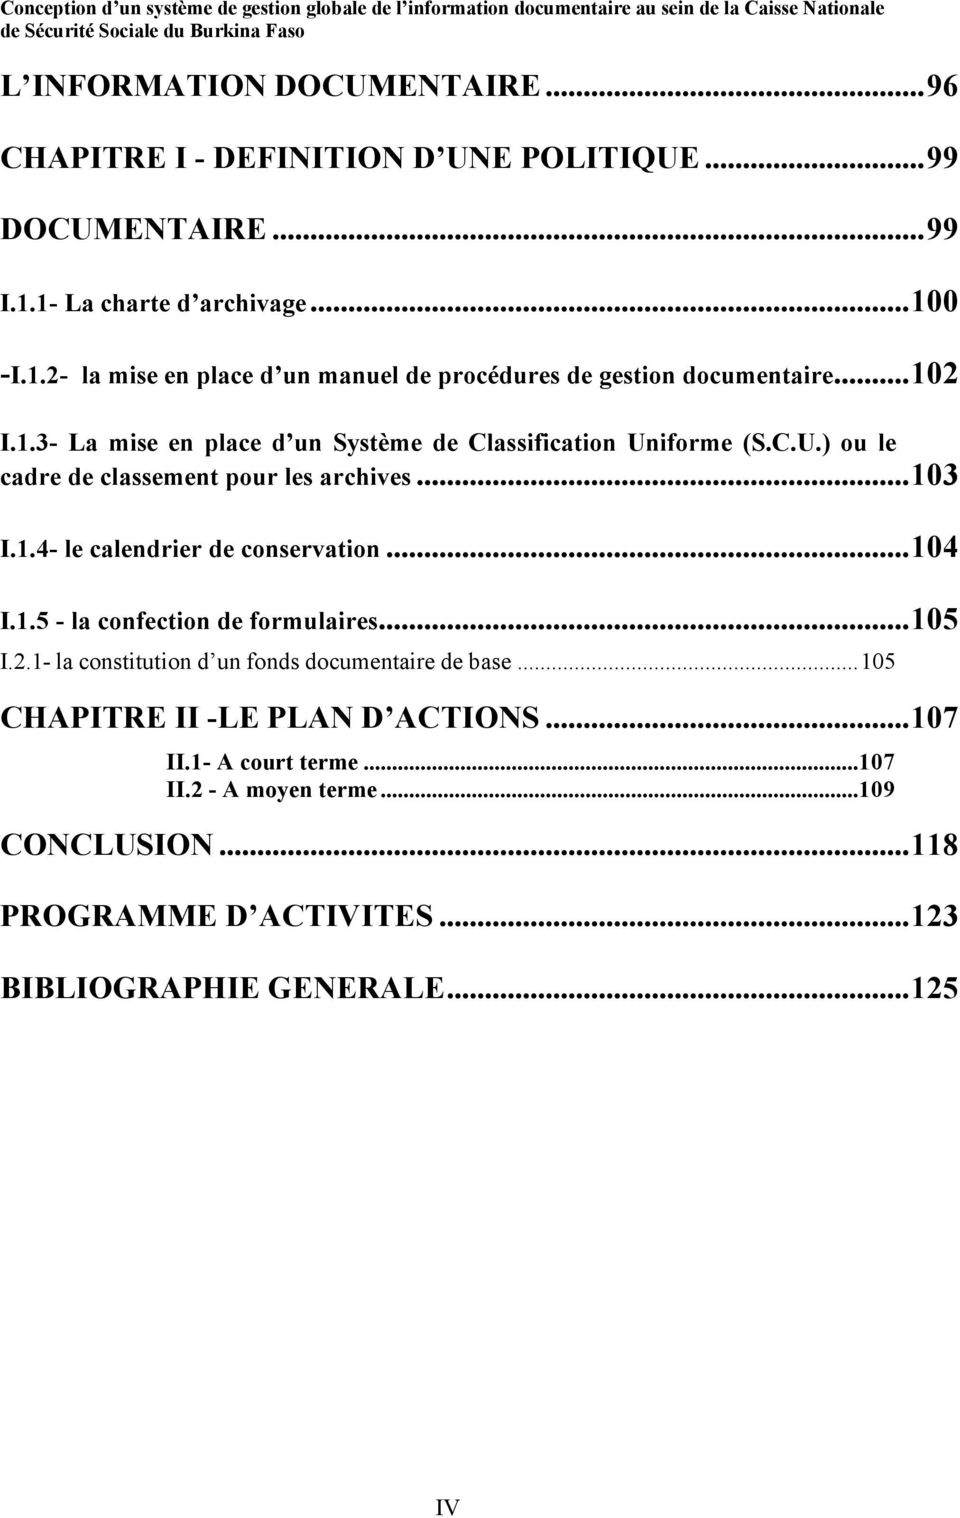 C.U.) ou le cadre de classement pour les archives...103 I.1.4- le calendrier de conservation...104 I.1.5 - la confection de formulaires...105 I.2.